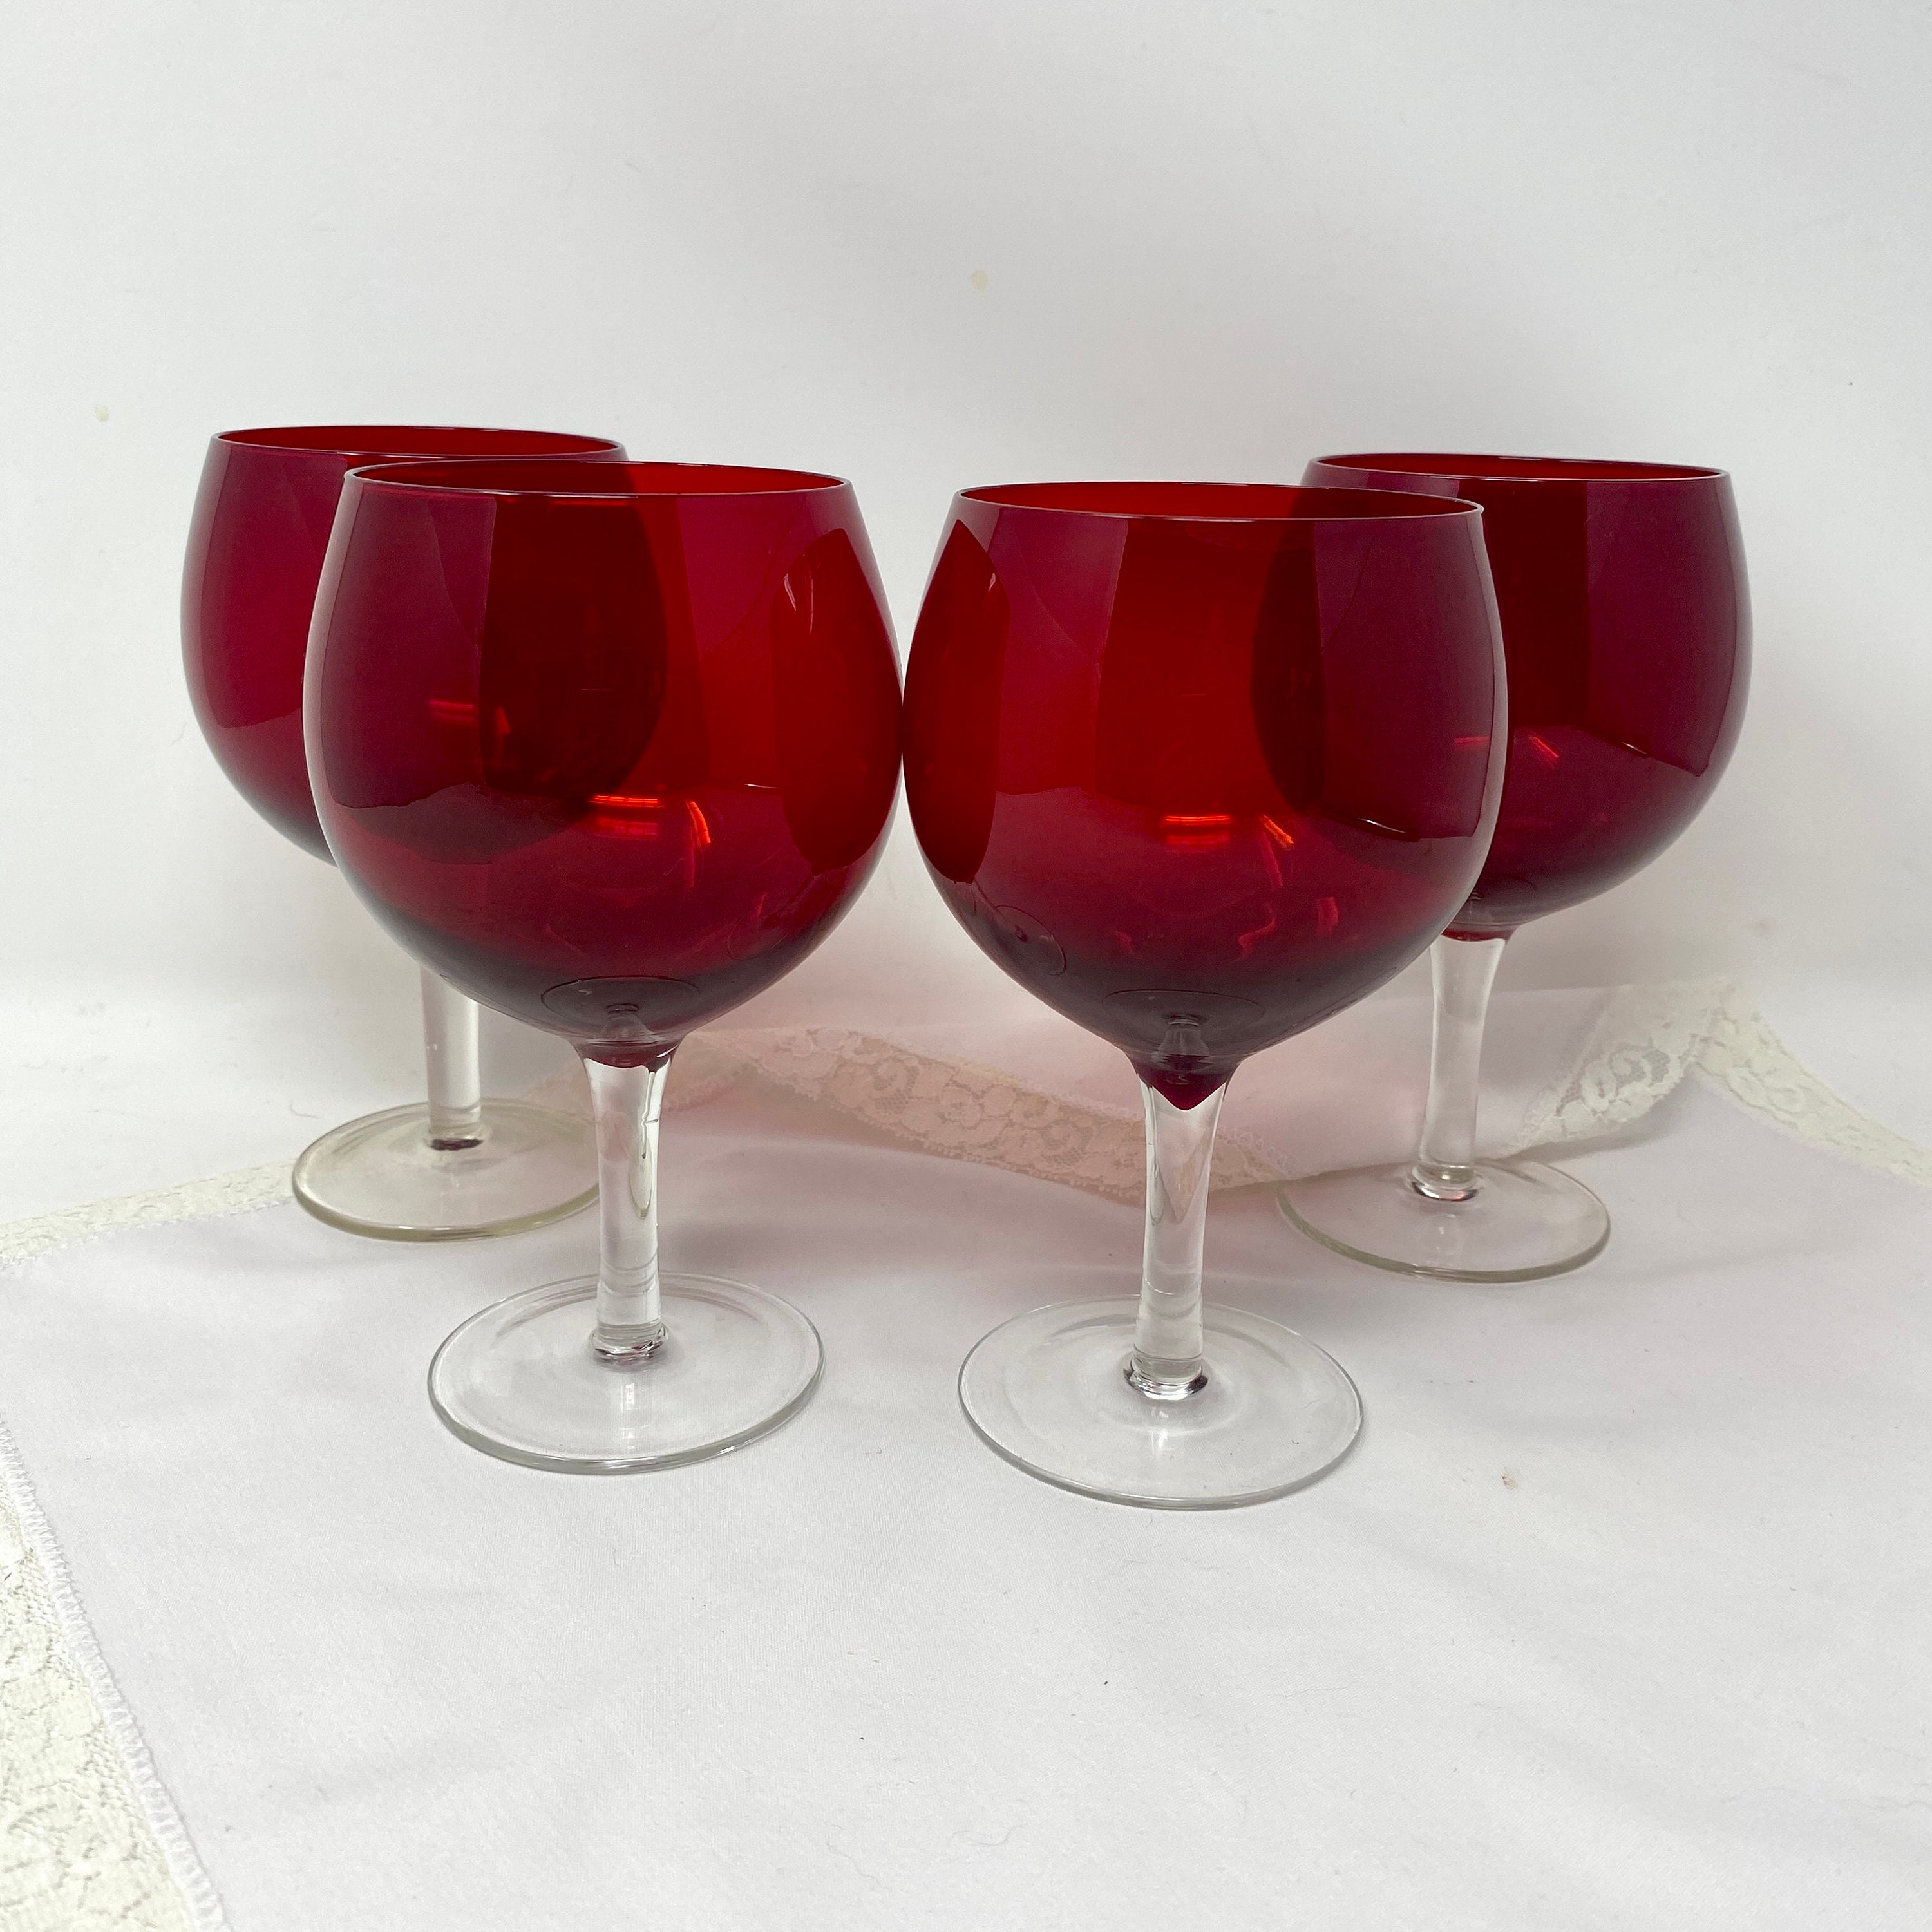 Venetian Hollow Stem White Wine Glass - Drinking Vessels